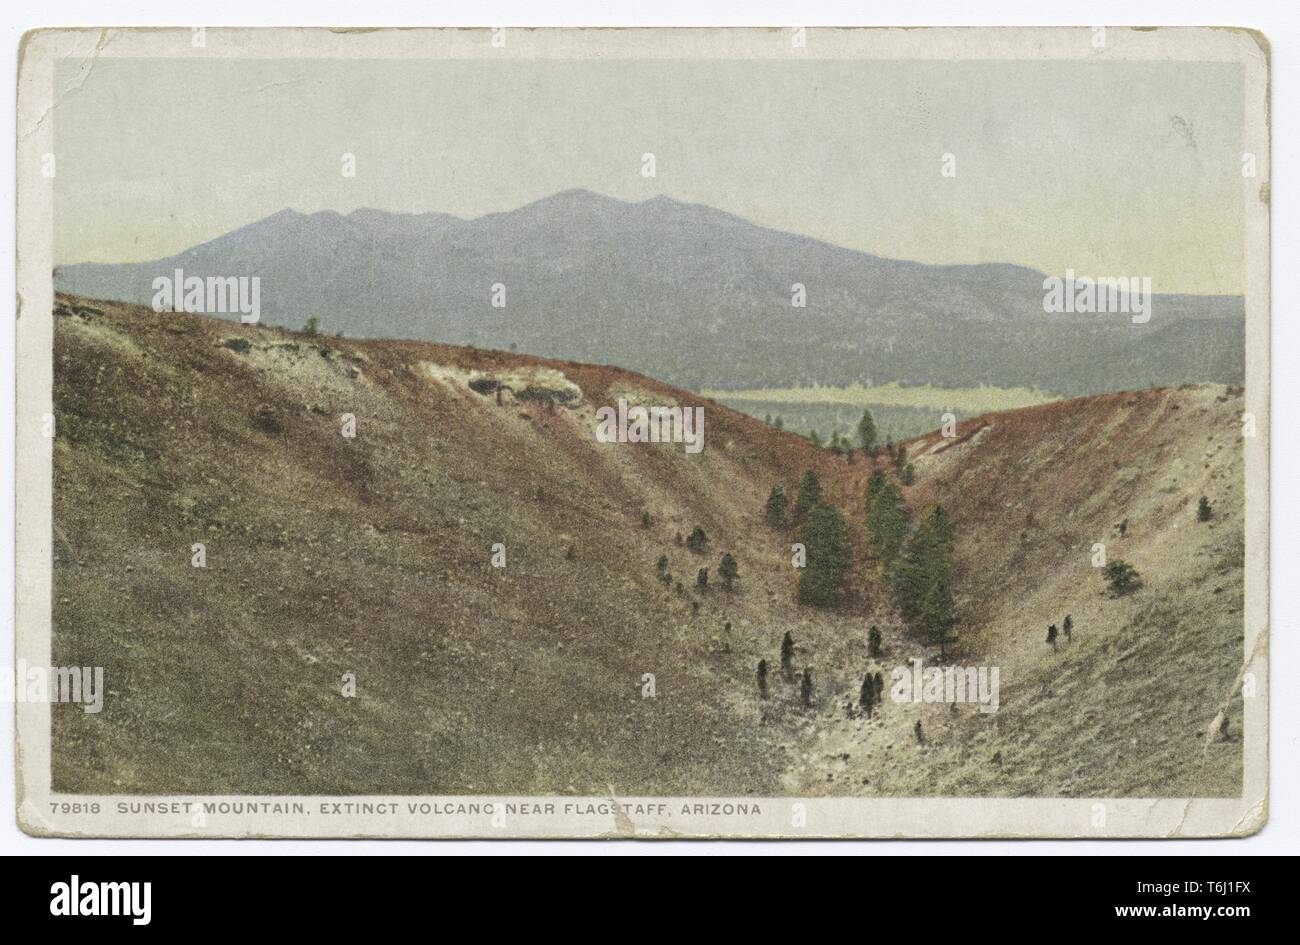 Detroit Publishing Company cartolina vintage del tramonto in montagna, un vulcano estinto vicino a Flagstaff, in Arizona, 1914. Dalla Biblioteca Pubblica di New York. () Foto Stock